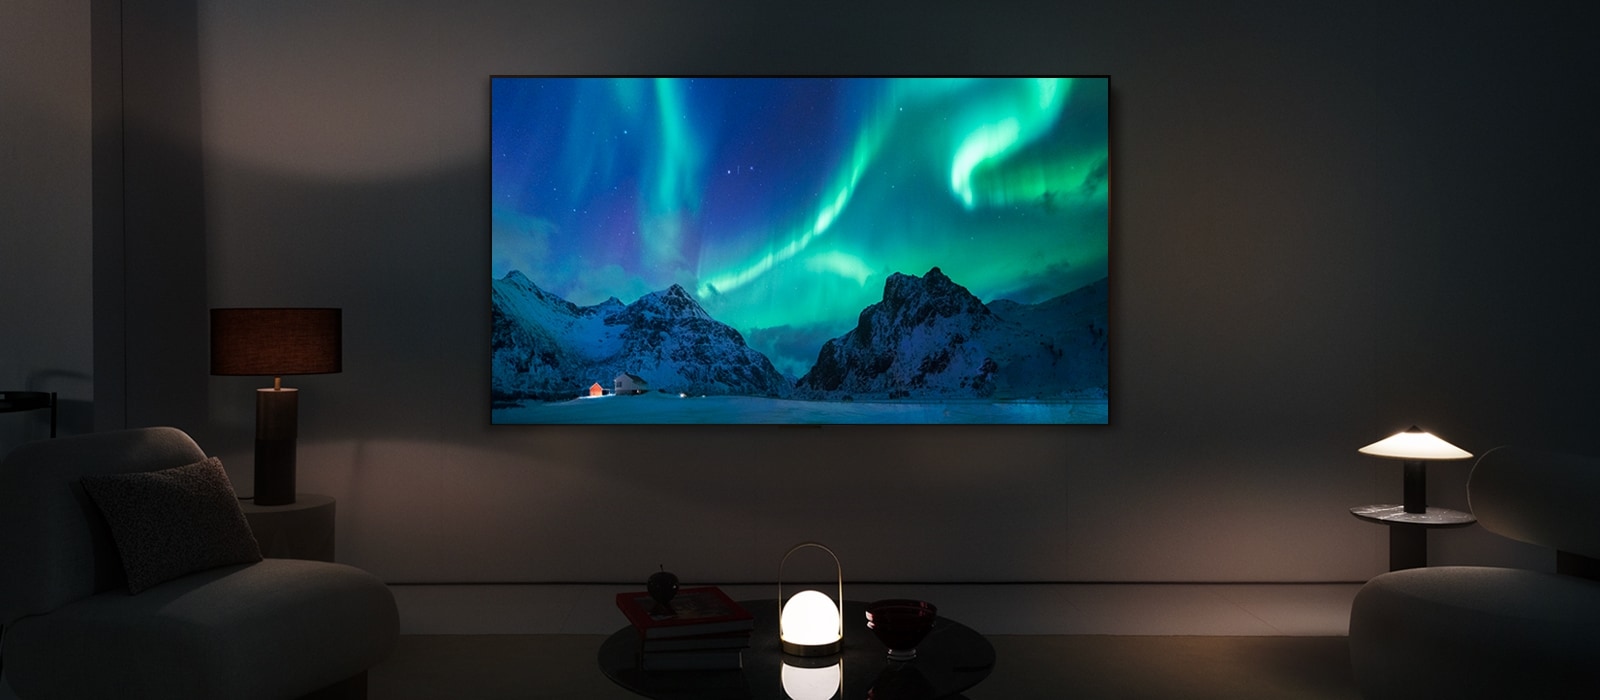 Televisor LG OLED en un salón moderno durante la noche. Se muestra en la pantalla la imagen de la aurora boreal con los niveles de brillo ideales.